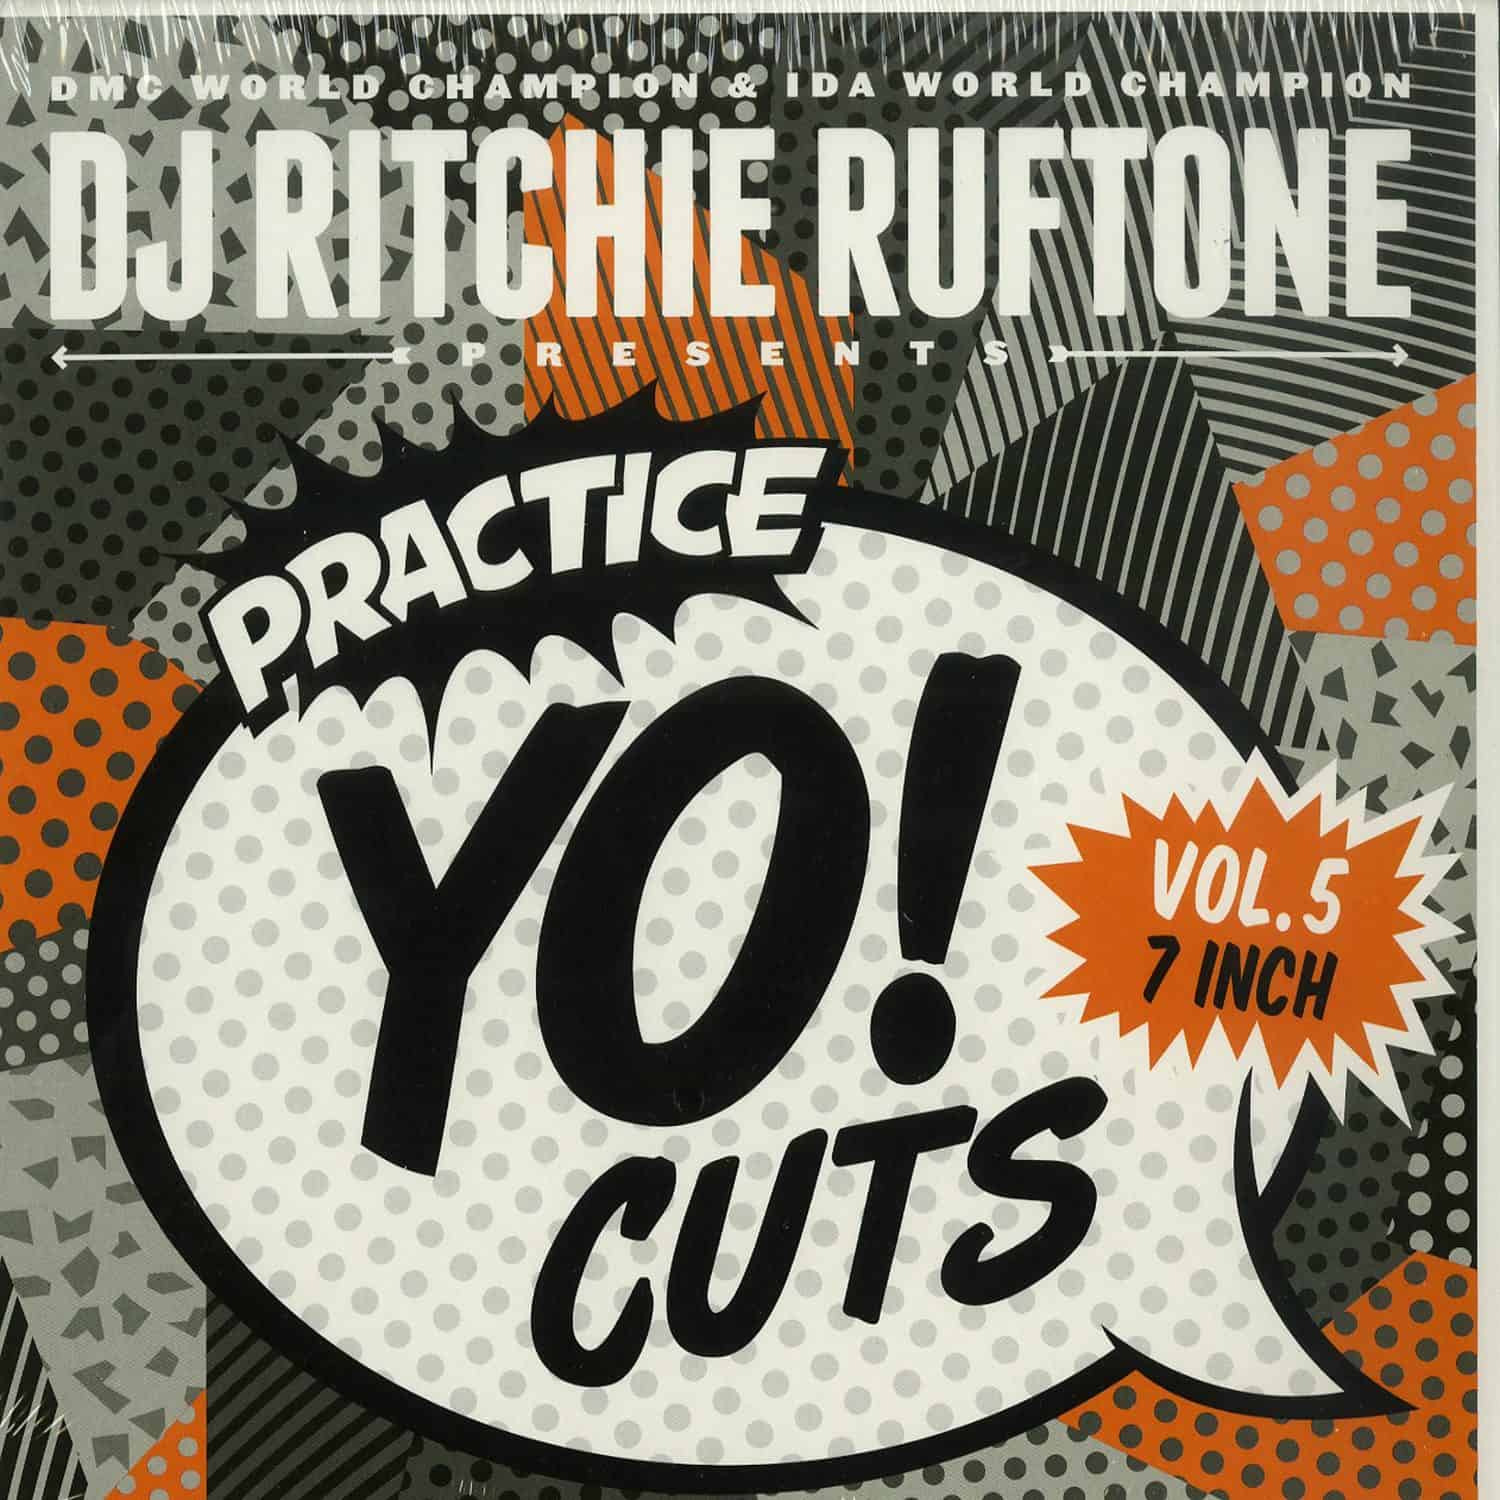 DJ Ritchie Rufftone - PRACTICE YO! CUTS VOL. 5 